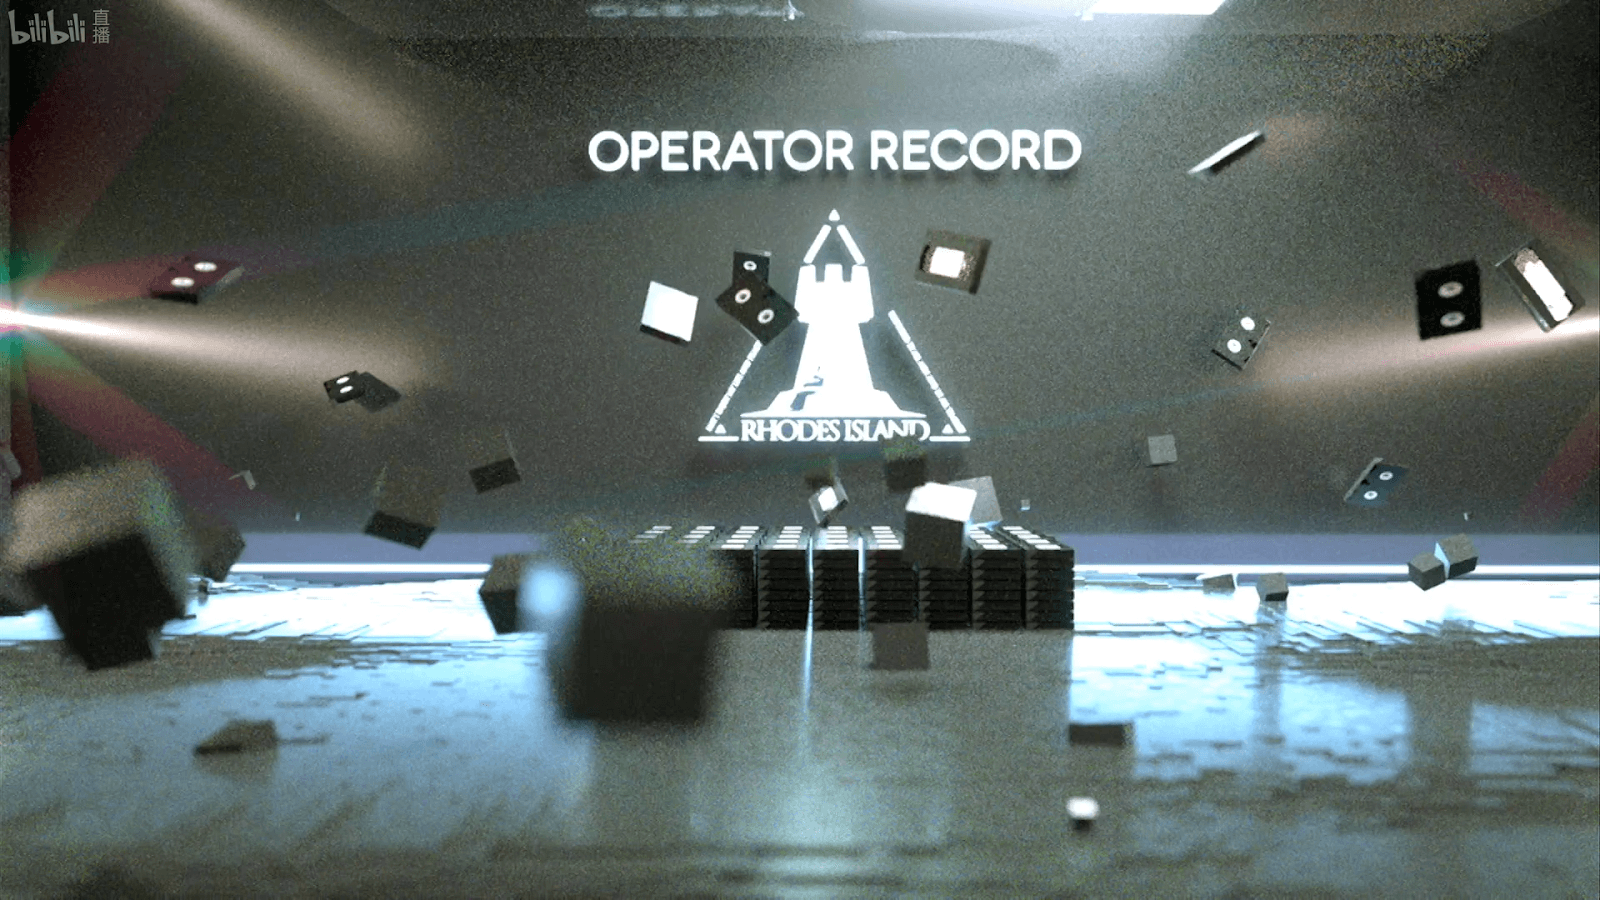 OperatorRecord